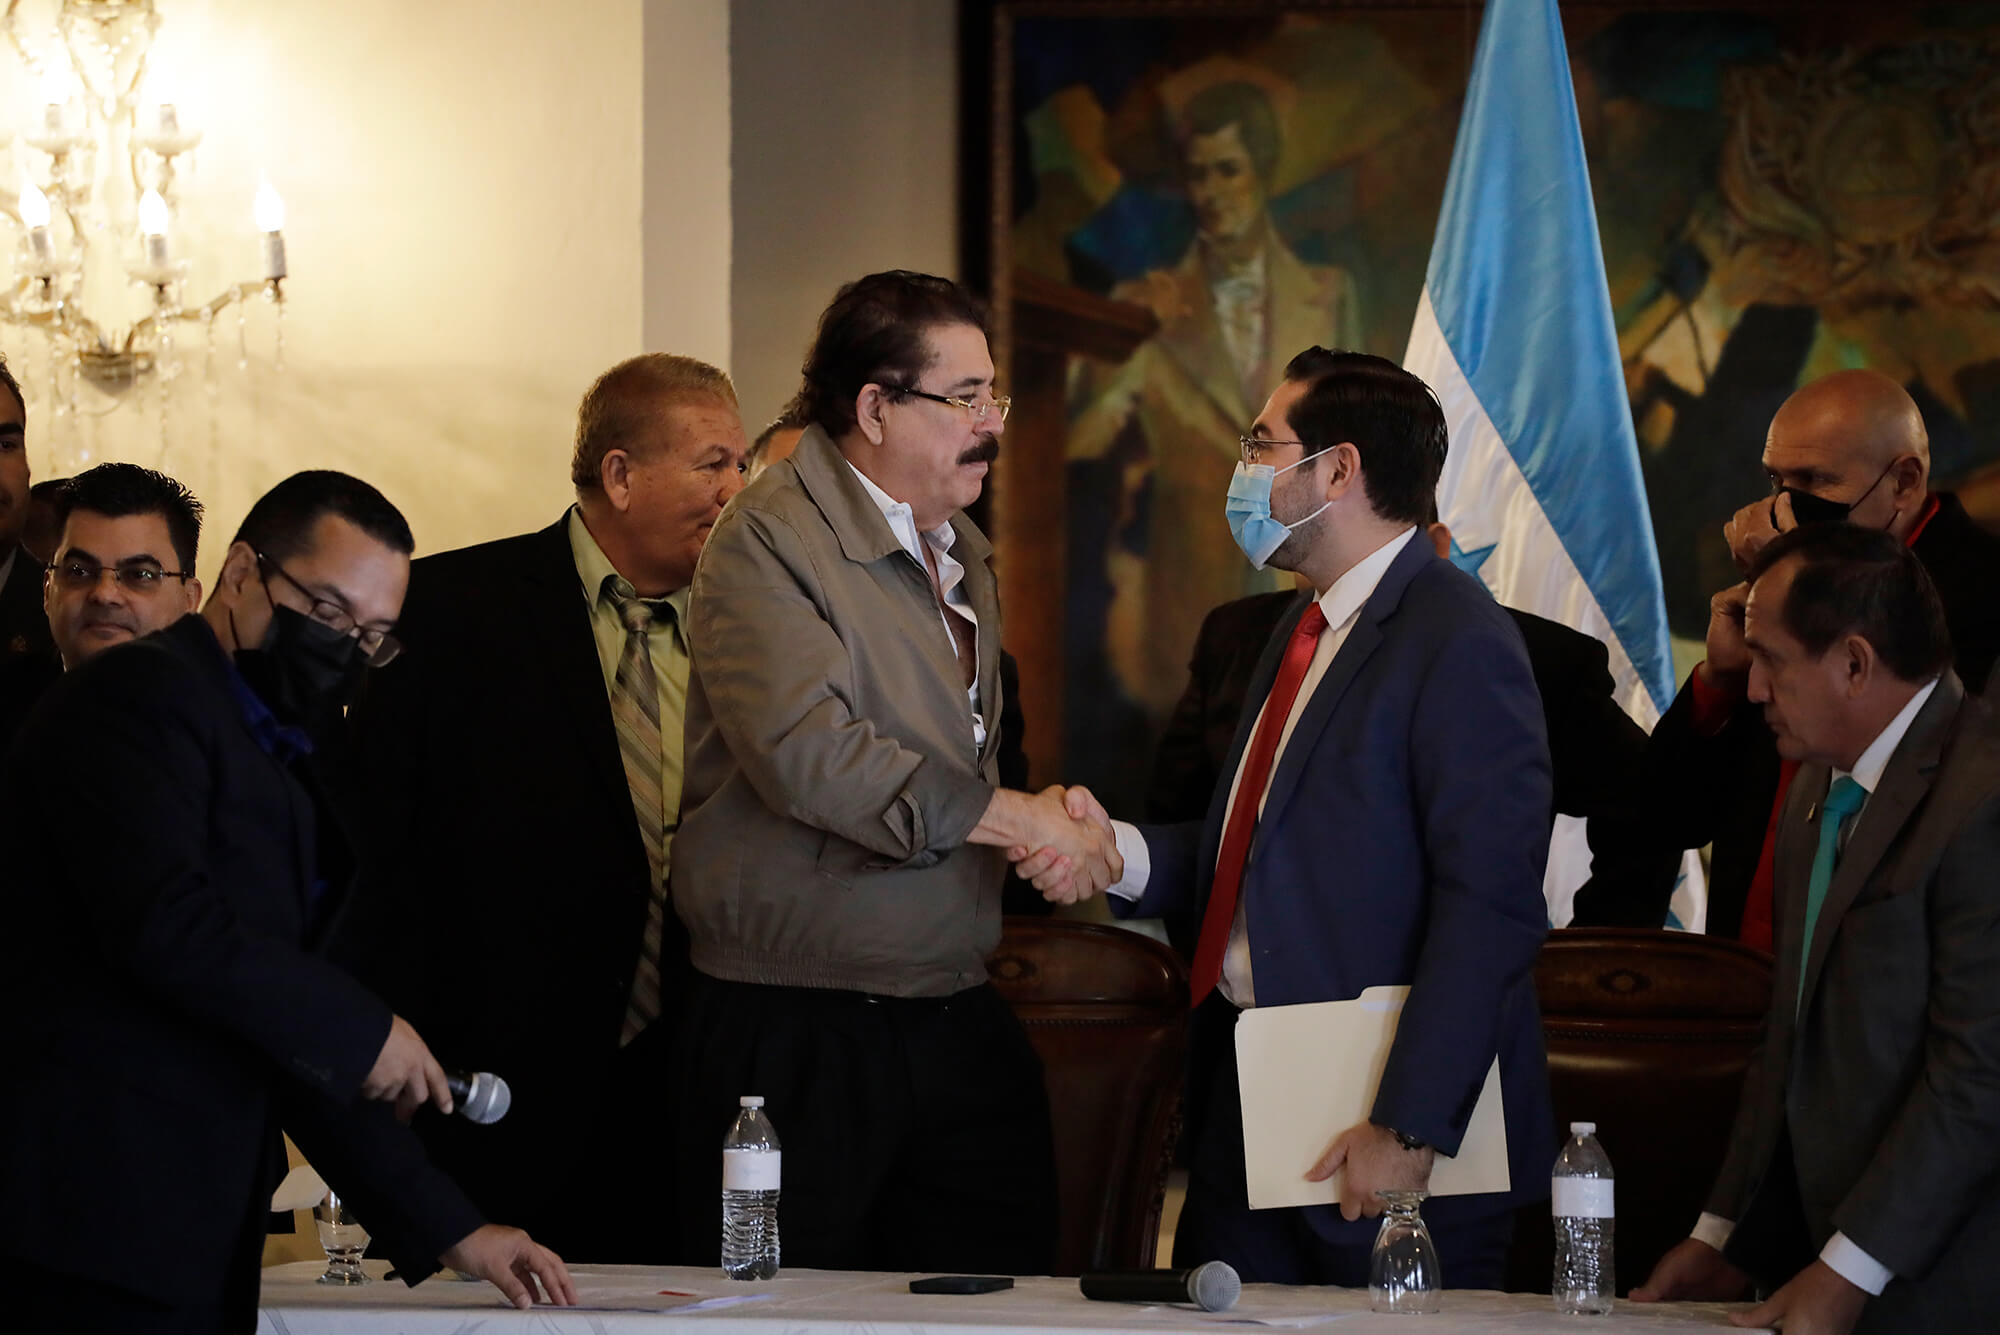 El diputado Jorge Calix estrecha la mano del ex-presidente Manuel Zelaya , después de una reunión privada en casa de Gobierno, Tegucigalpa, Honduras.